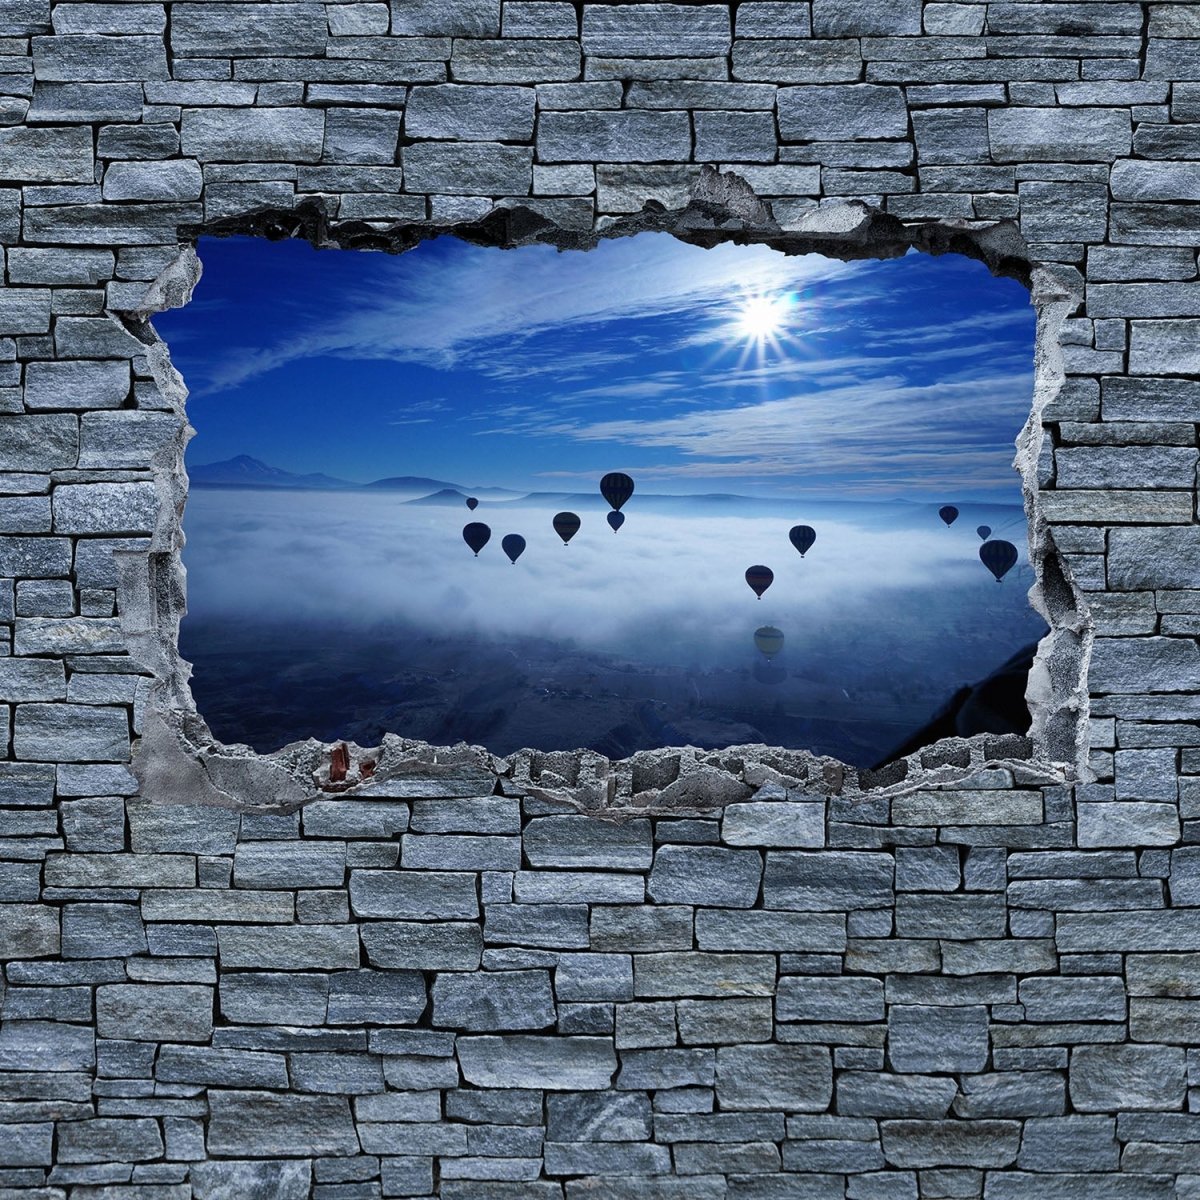 Beistelltisch 3D Luftballon Turkei - grobe Steinmauer M0635 entdecken - Bild 2